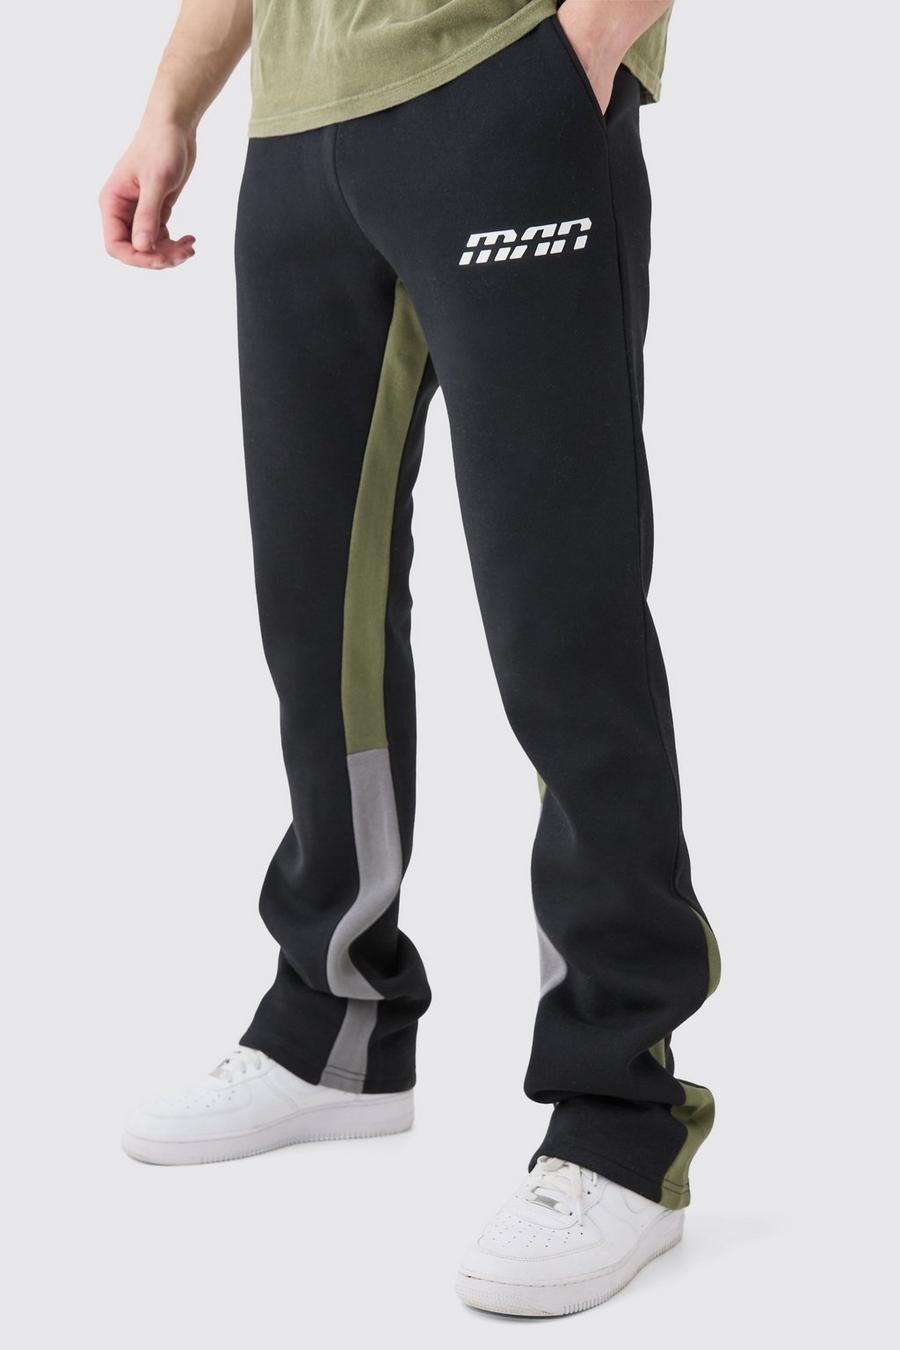 Pantaloni tuta a zampa Tall Slim Fit a blocchi di colore neri con inserti, Black image number 1